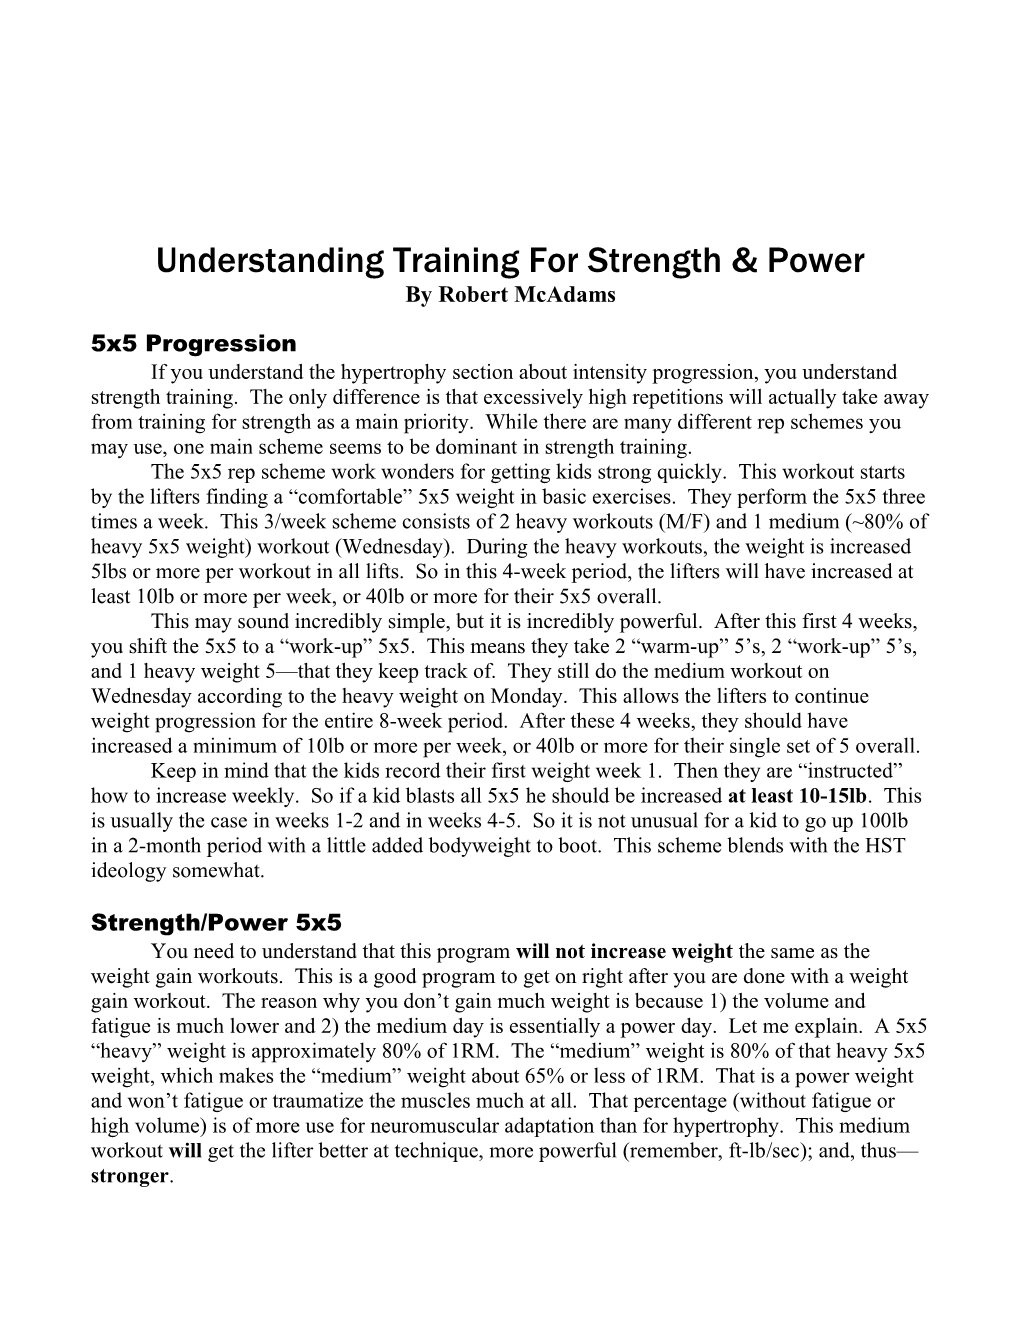 Understanding Training for Strength & Power